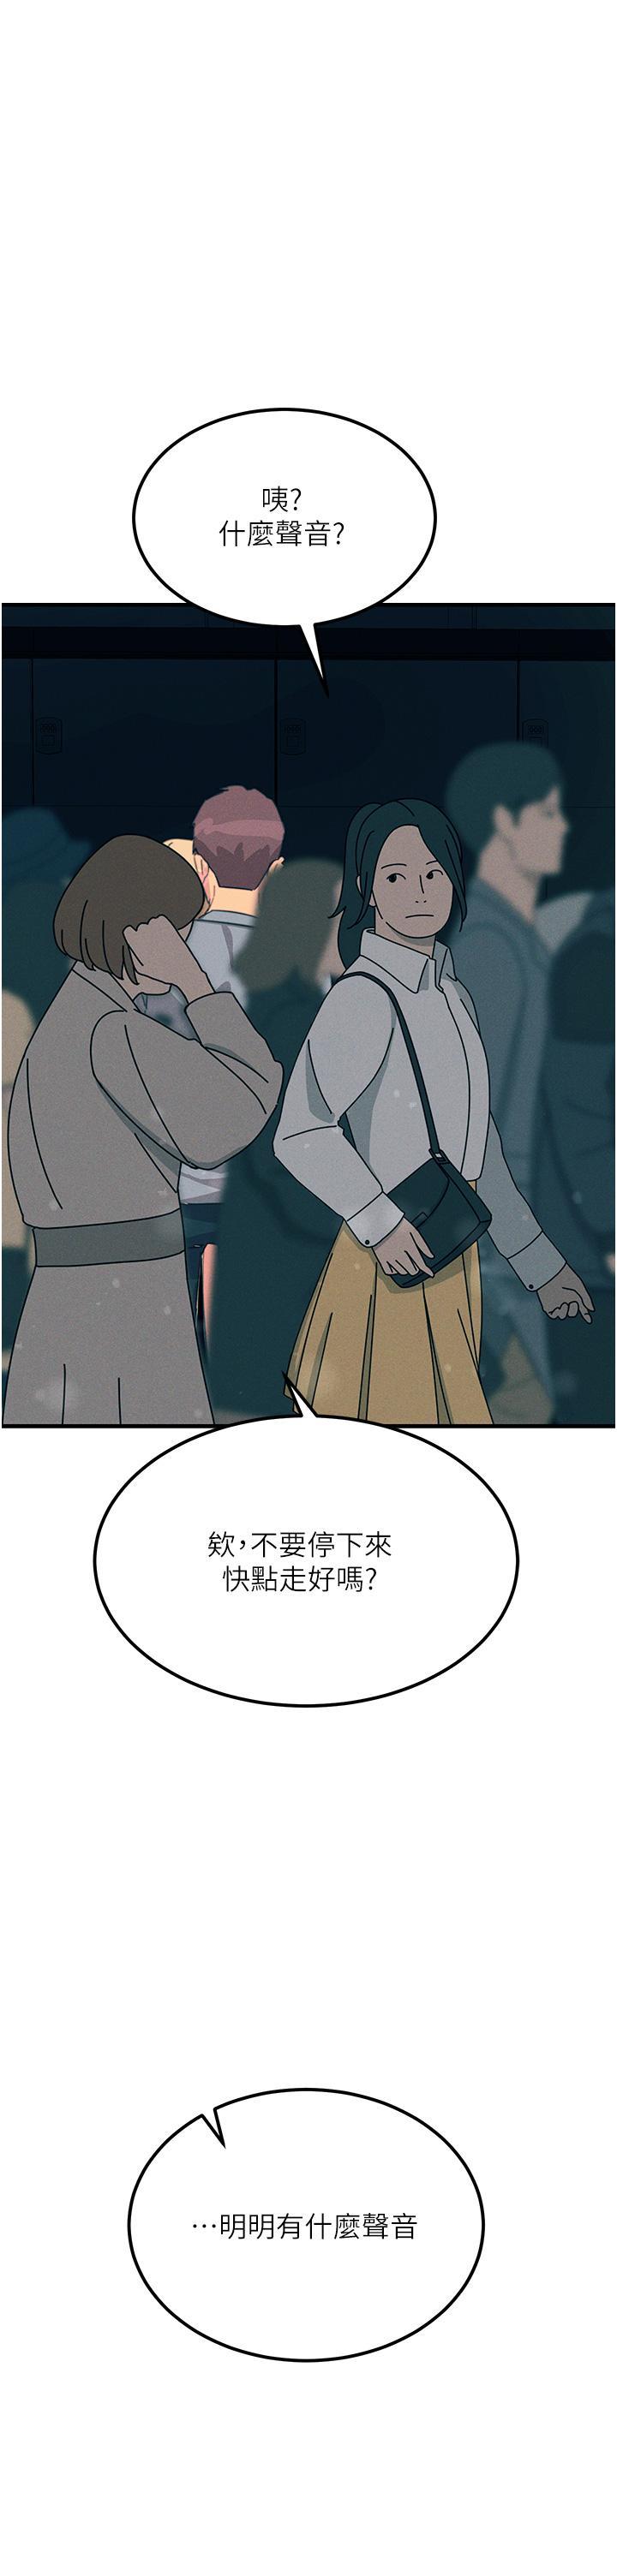 韩国污漫画 觸電大師 第63话 第二回合的序曲 52